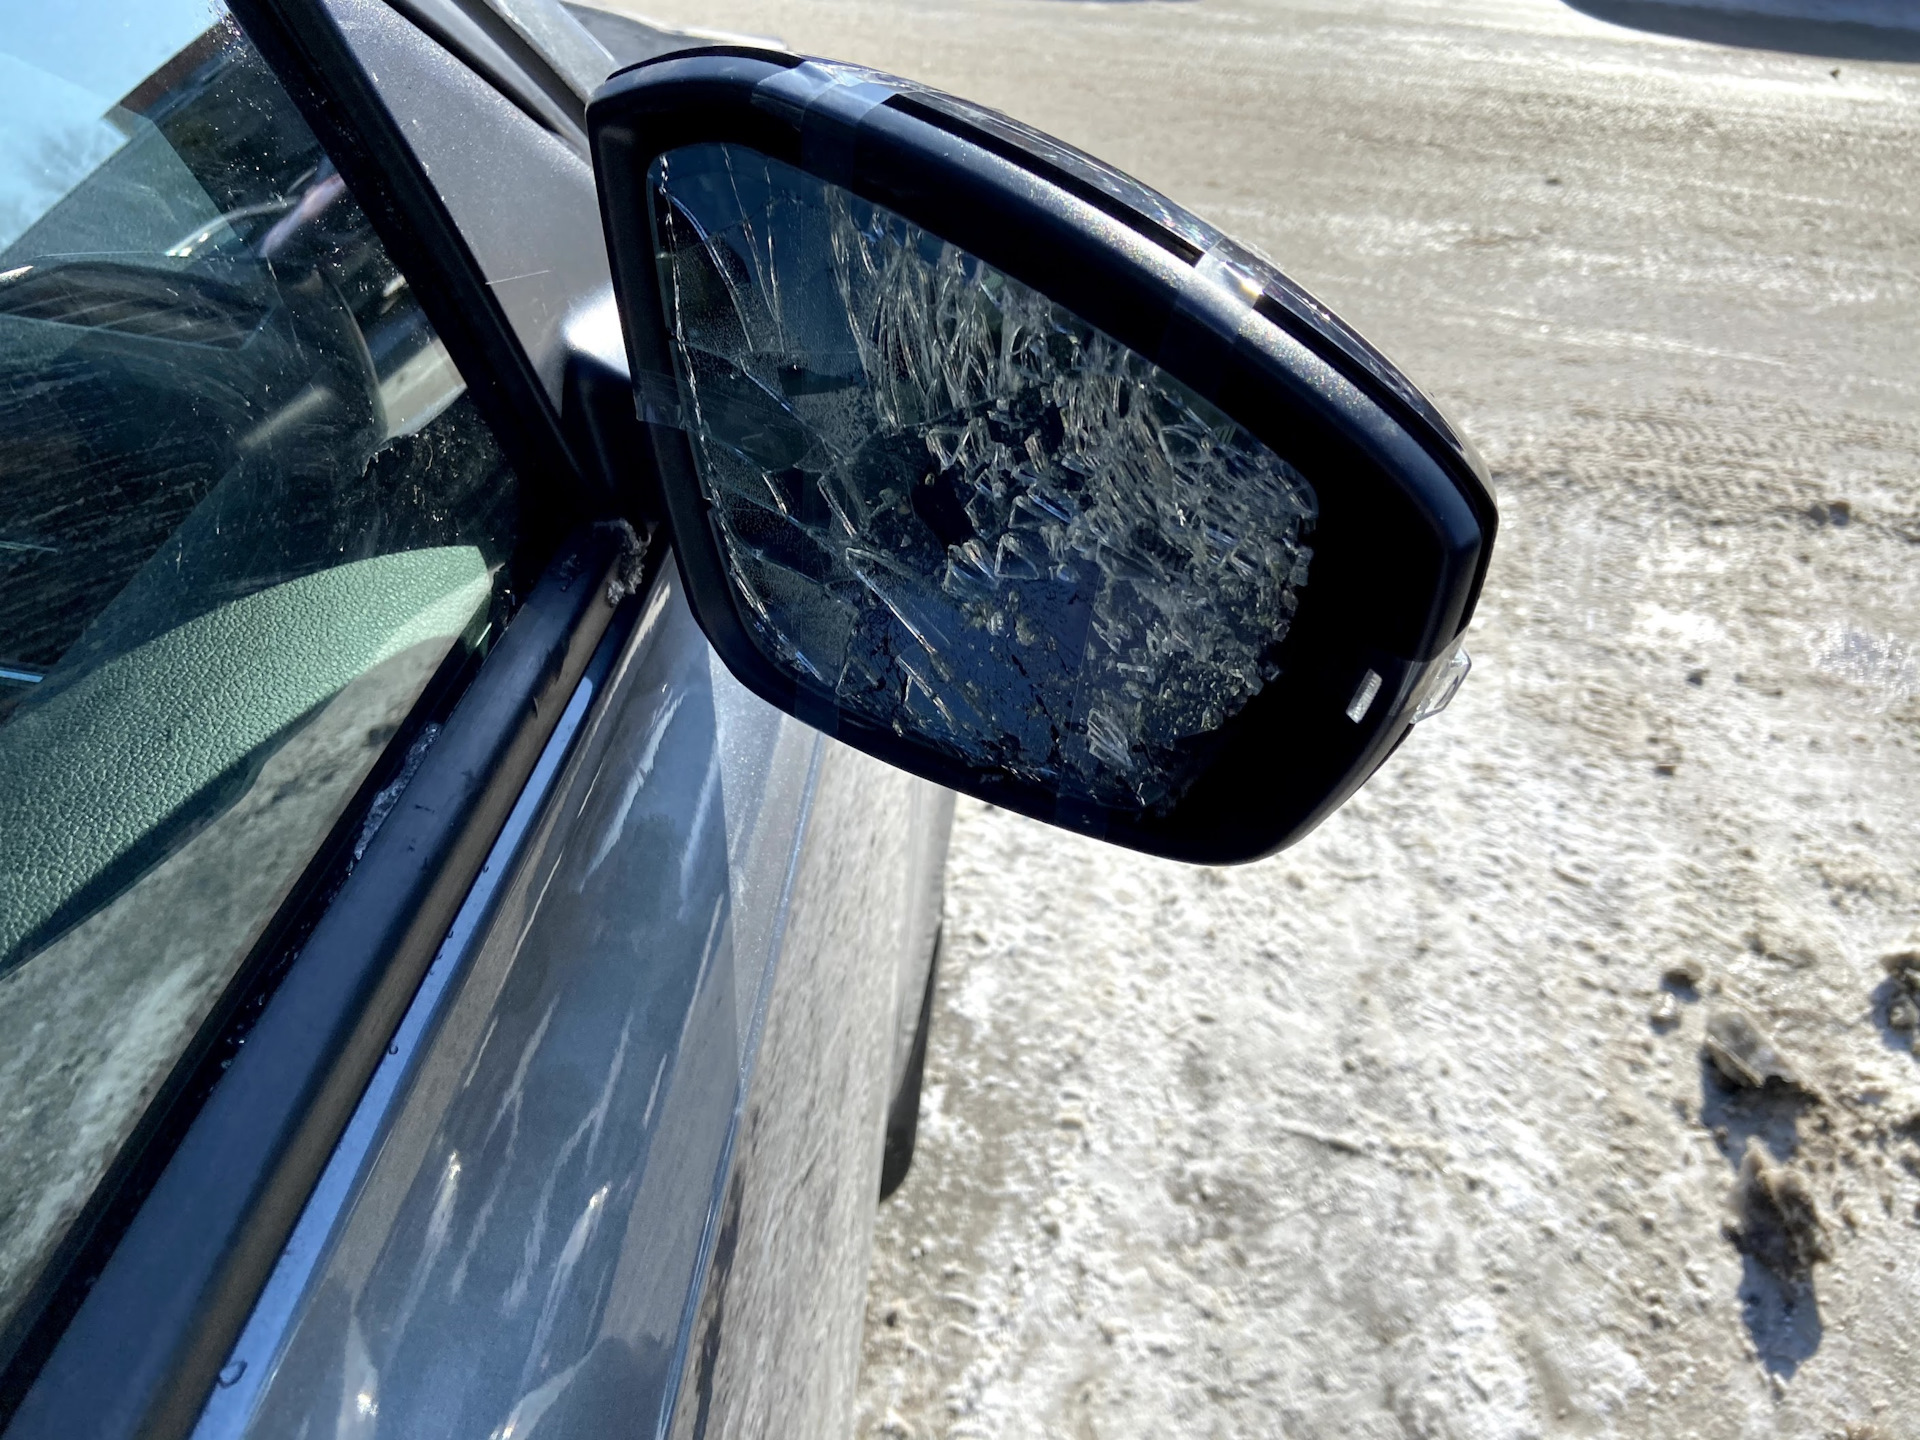 Разбилось зеркало само. Разбитое зеркало машины. Зеркало в машине. Зеркала автомобиля разбитые. Автомобиль с разбитым зеркалом.